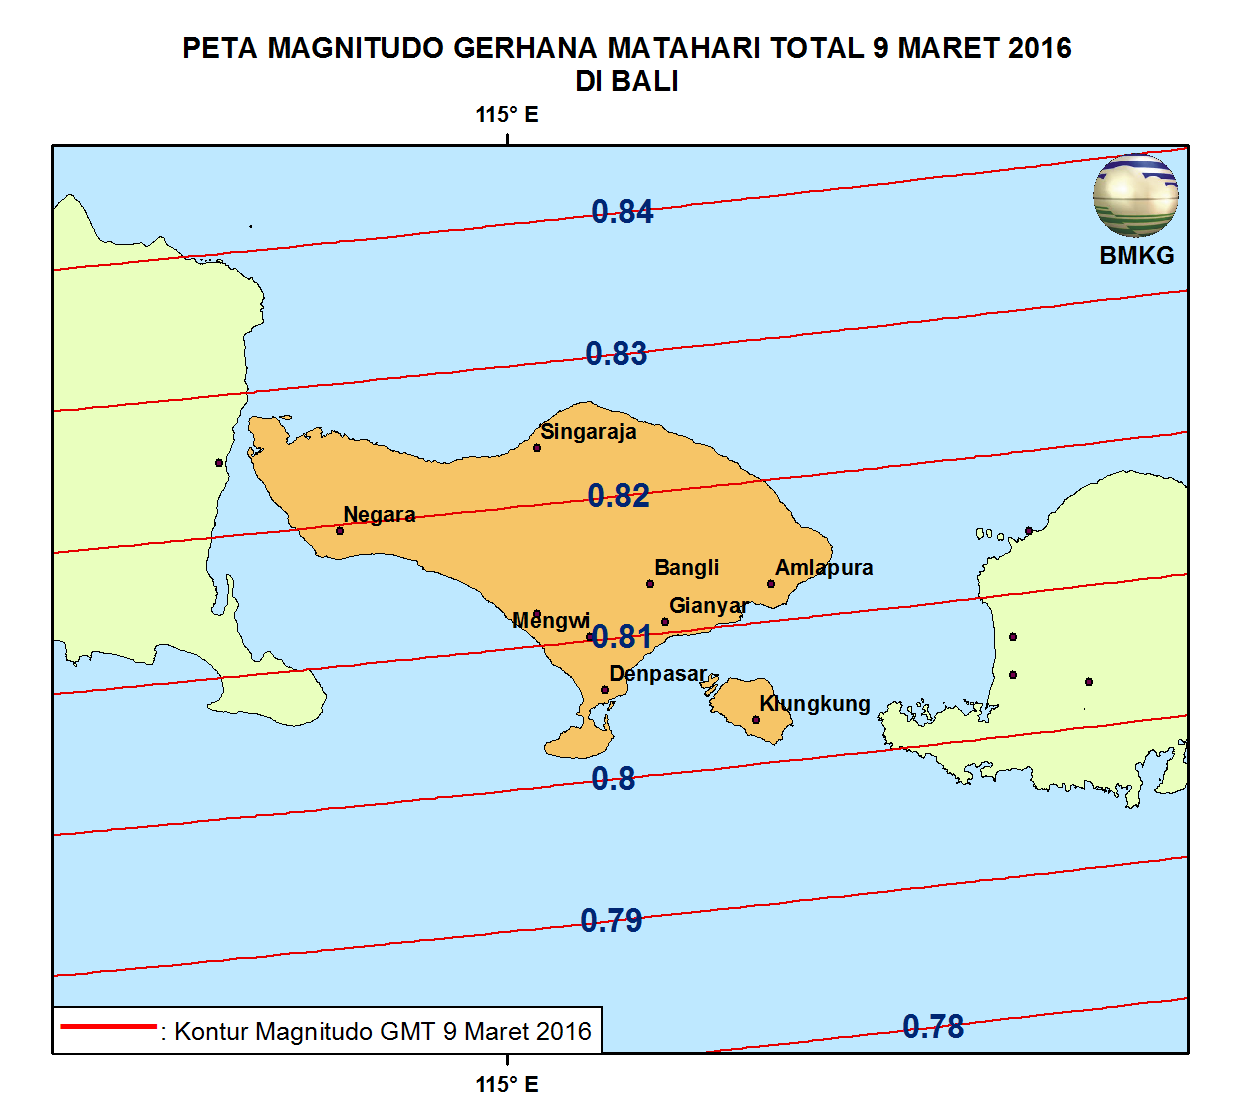 KETERAMATAN GERHANA MATAHARI TOTAL 9 MARET 2016 DI BALI Pada Gambar berikut ditampilkan peta magnitudo Gerhana Matahari Total 9 Maret 2016 yang teramati dari Bali.